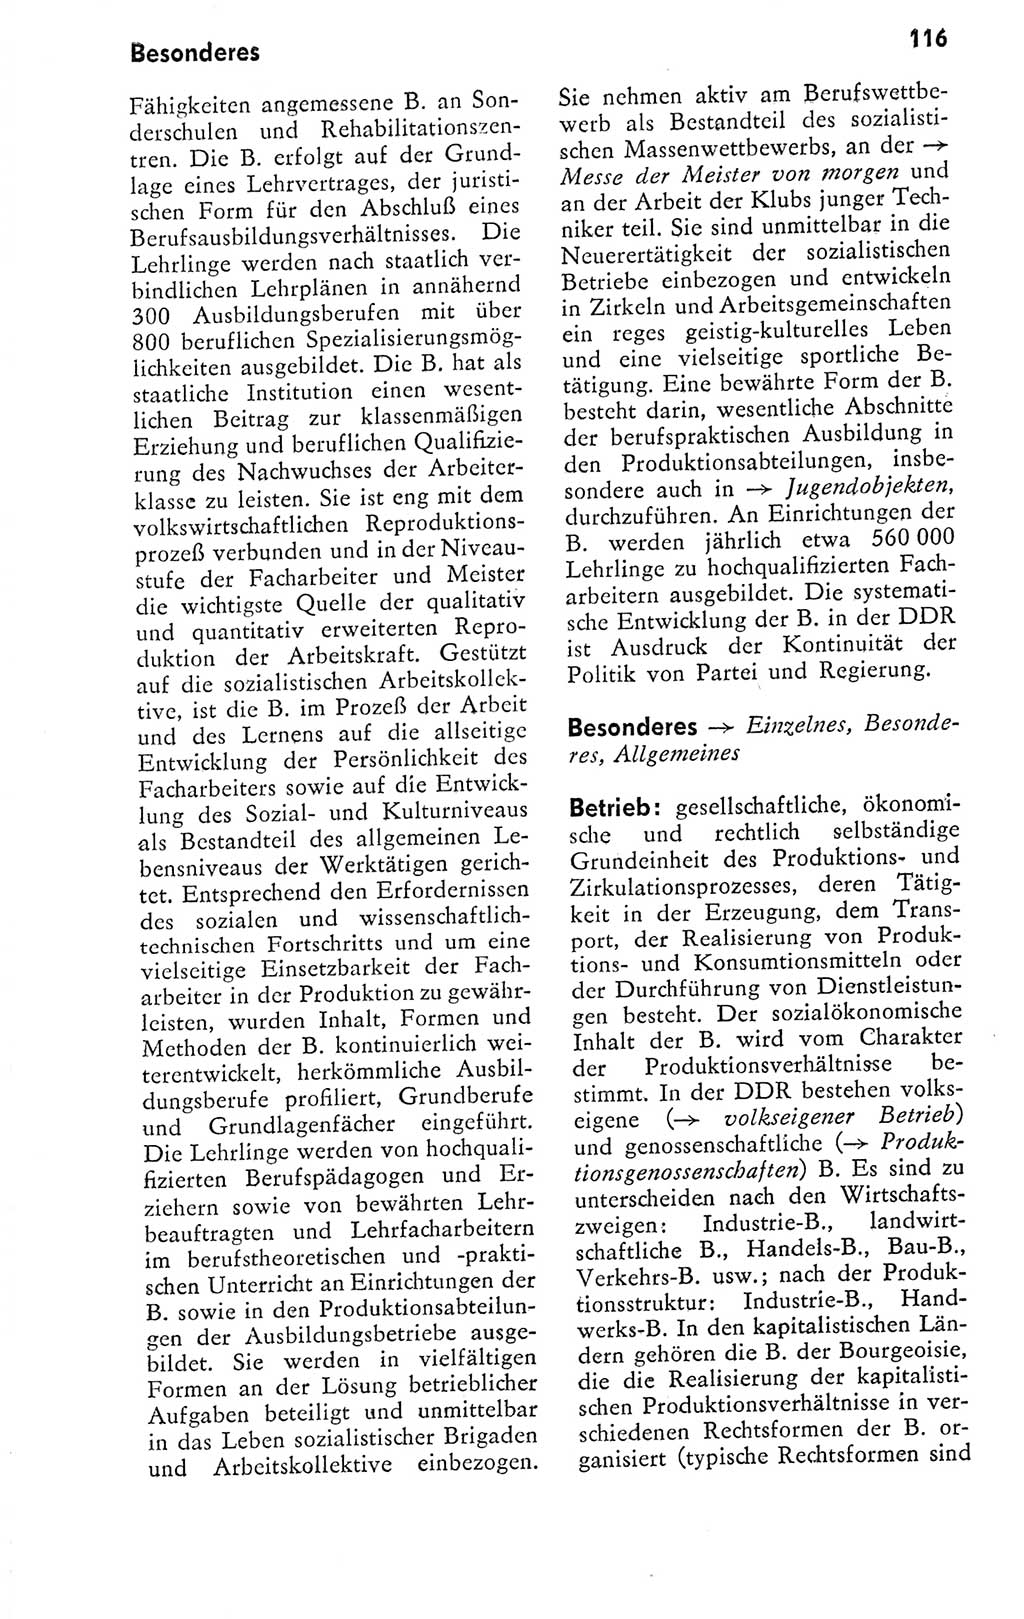 Kleines politisches Wörterbuch [Deutsche Demokratische Republik (DDR)] 1978, Seite 116 (Kl. pol. Wb. DDR 1978, S. 116)